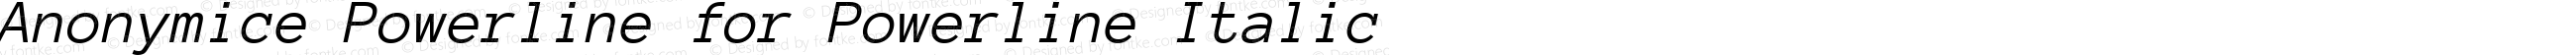 Anonymice Powerline Italic for Powerline